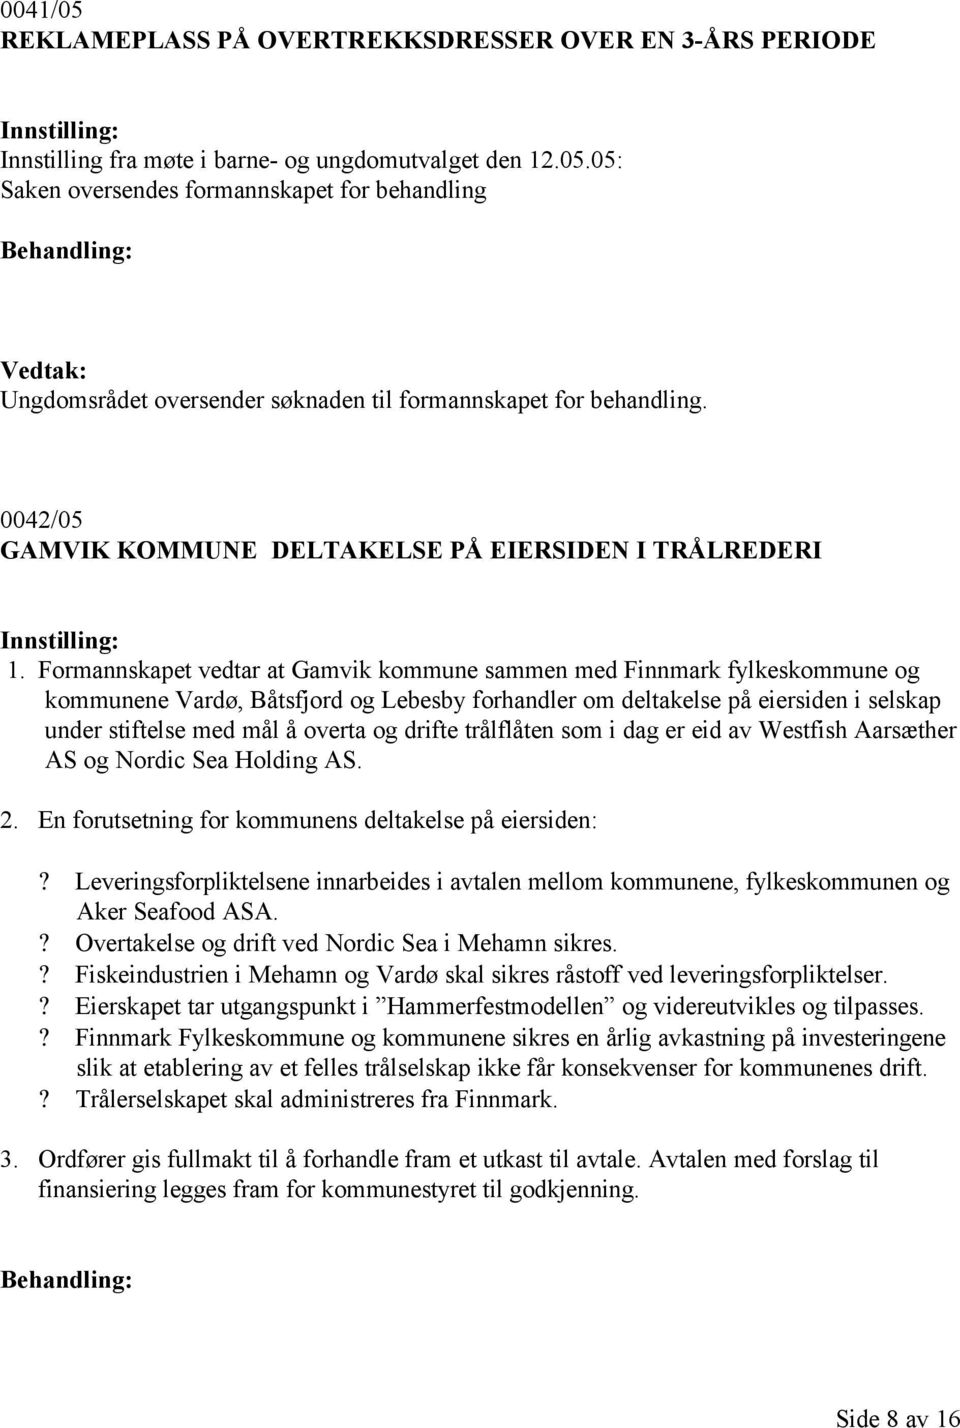 Formannskapet vedtar at Gamvik kommune sammen med Finnmark fylkeskommune og kommunene Vardø, Båtsfjord og Lebesby forhandler om deltakelse på eiersiden i selskap under stiftelse med mål å overta og